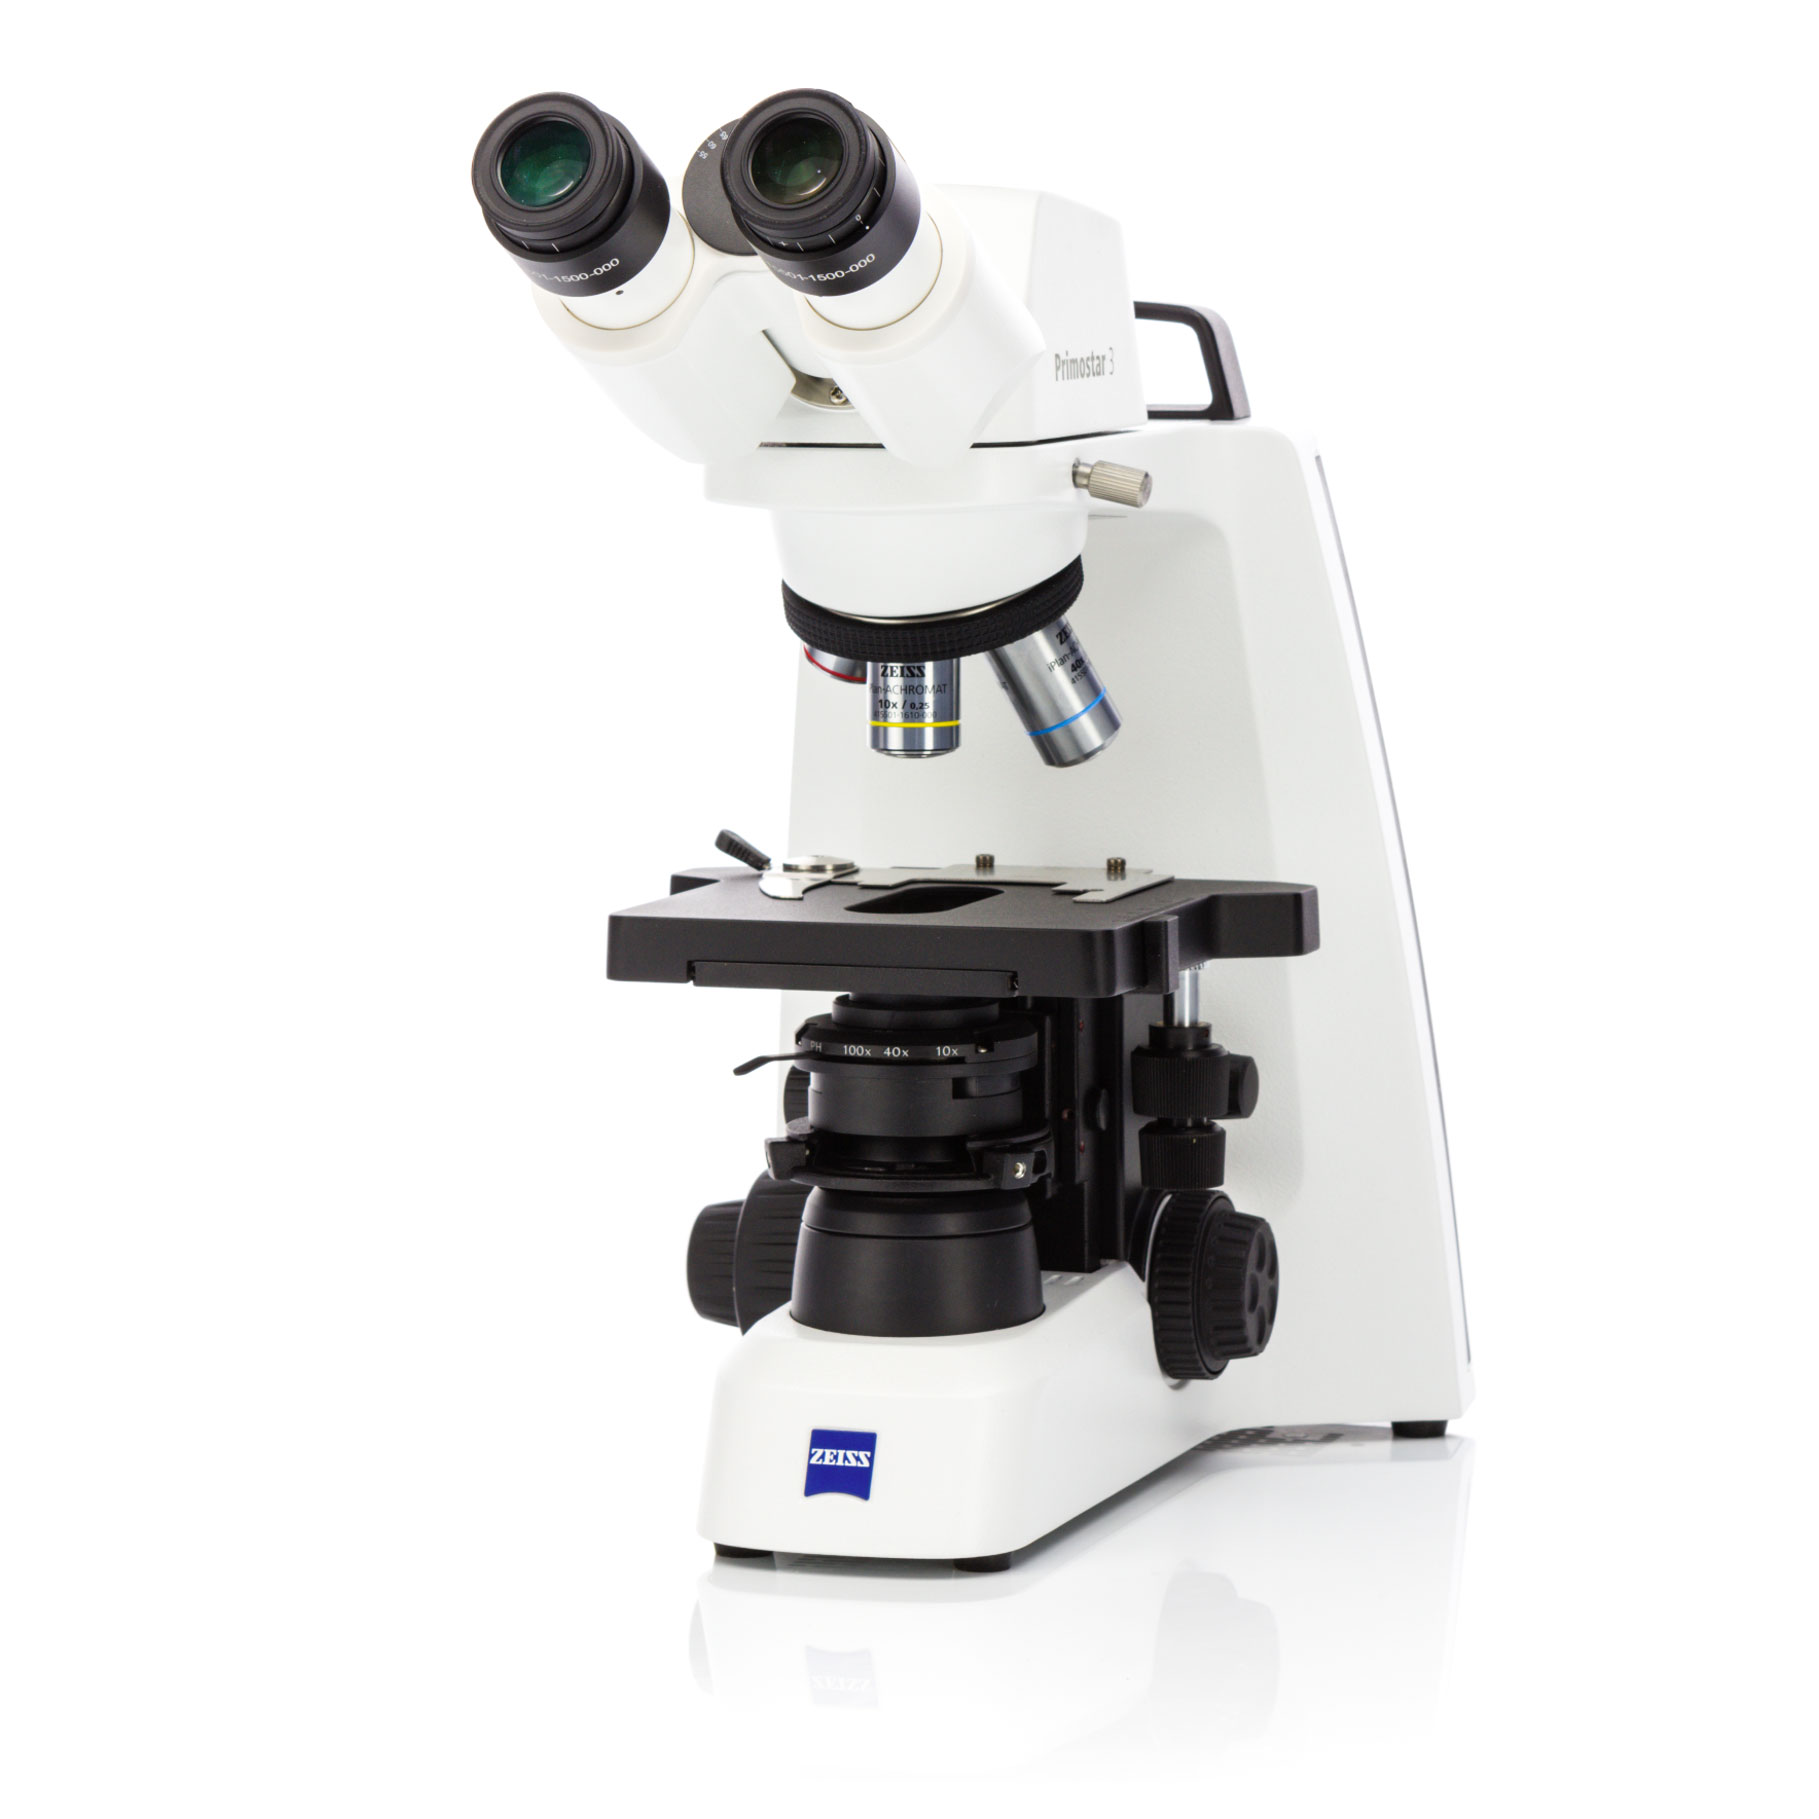 Use este robusto y compacto microscopio rutinario para impulsar su enseñanza y formación o el trabajo habitual del laboratorio clínico.